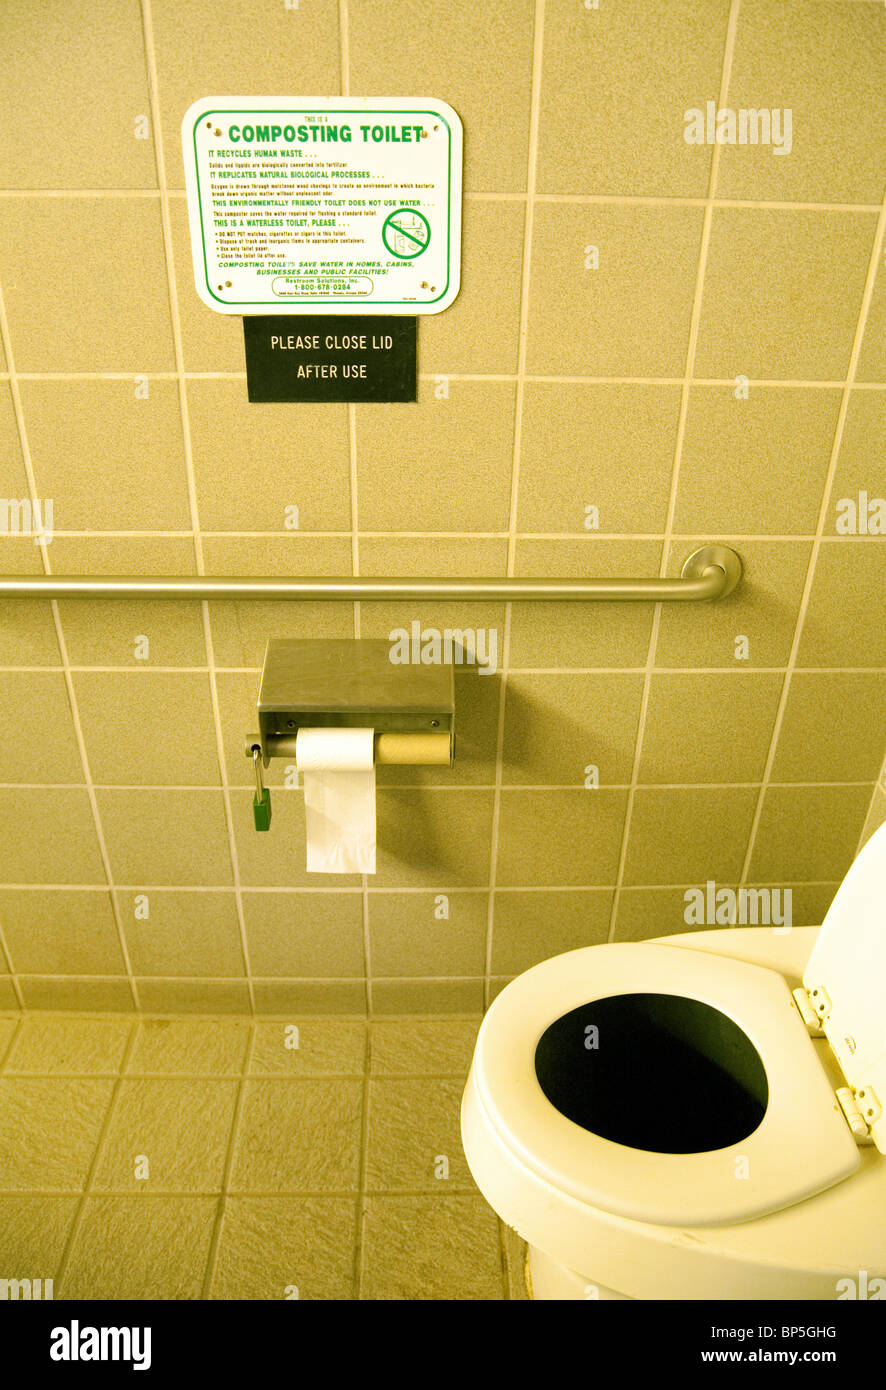 An environmentally friendly  composting toilet, Arizona, USA Stock Photo